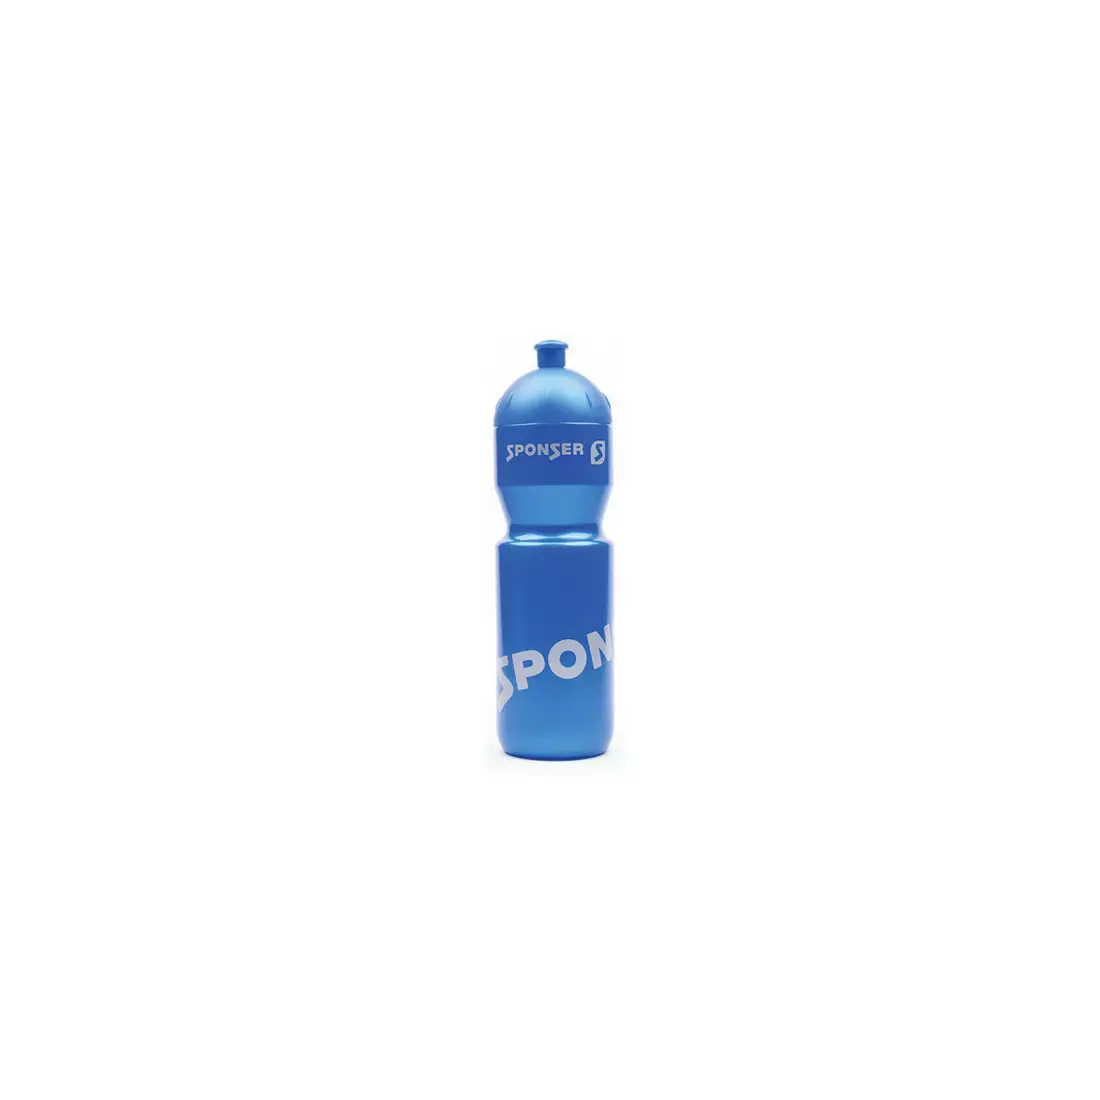 SPONSER láhev s vodou na kolo FARBIG 750 ml blue